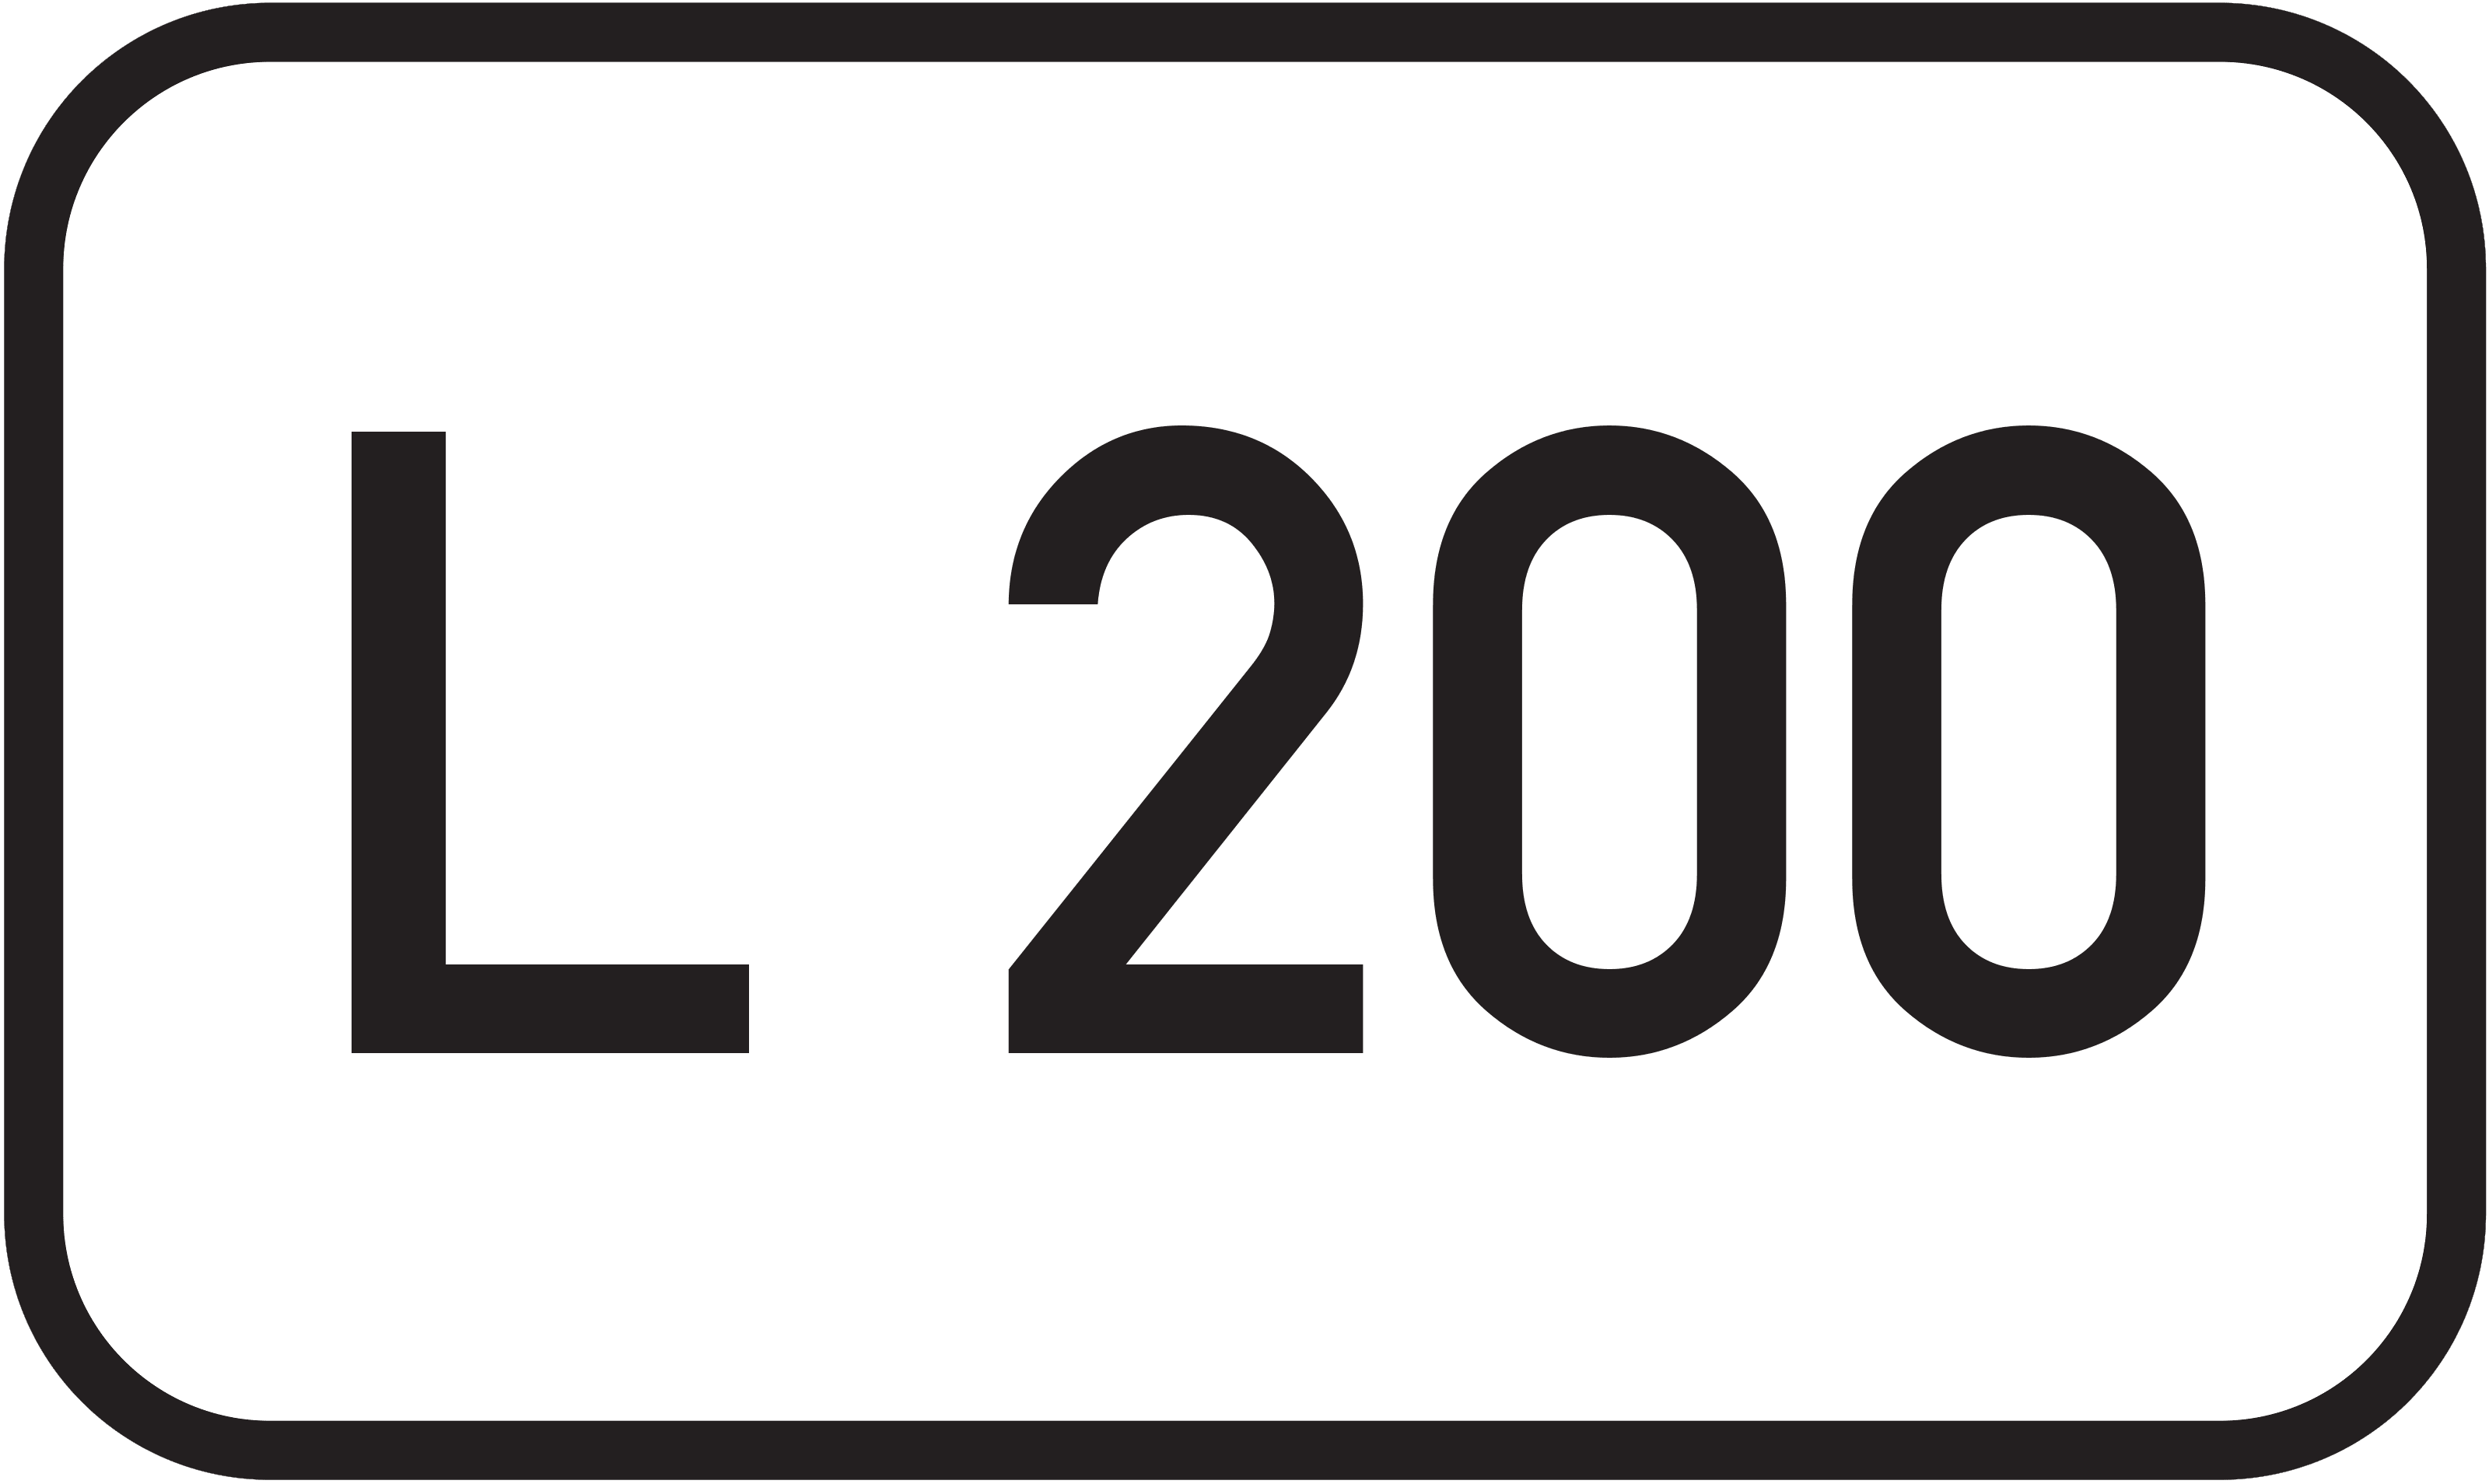 Landesstraße L 200